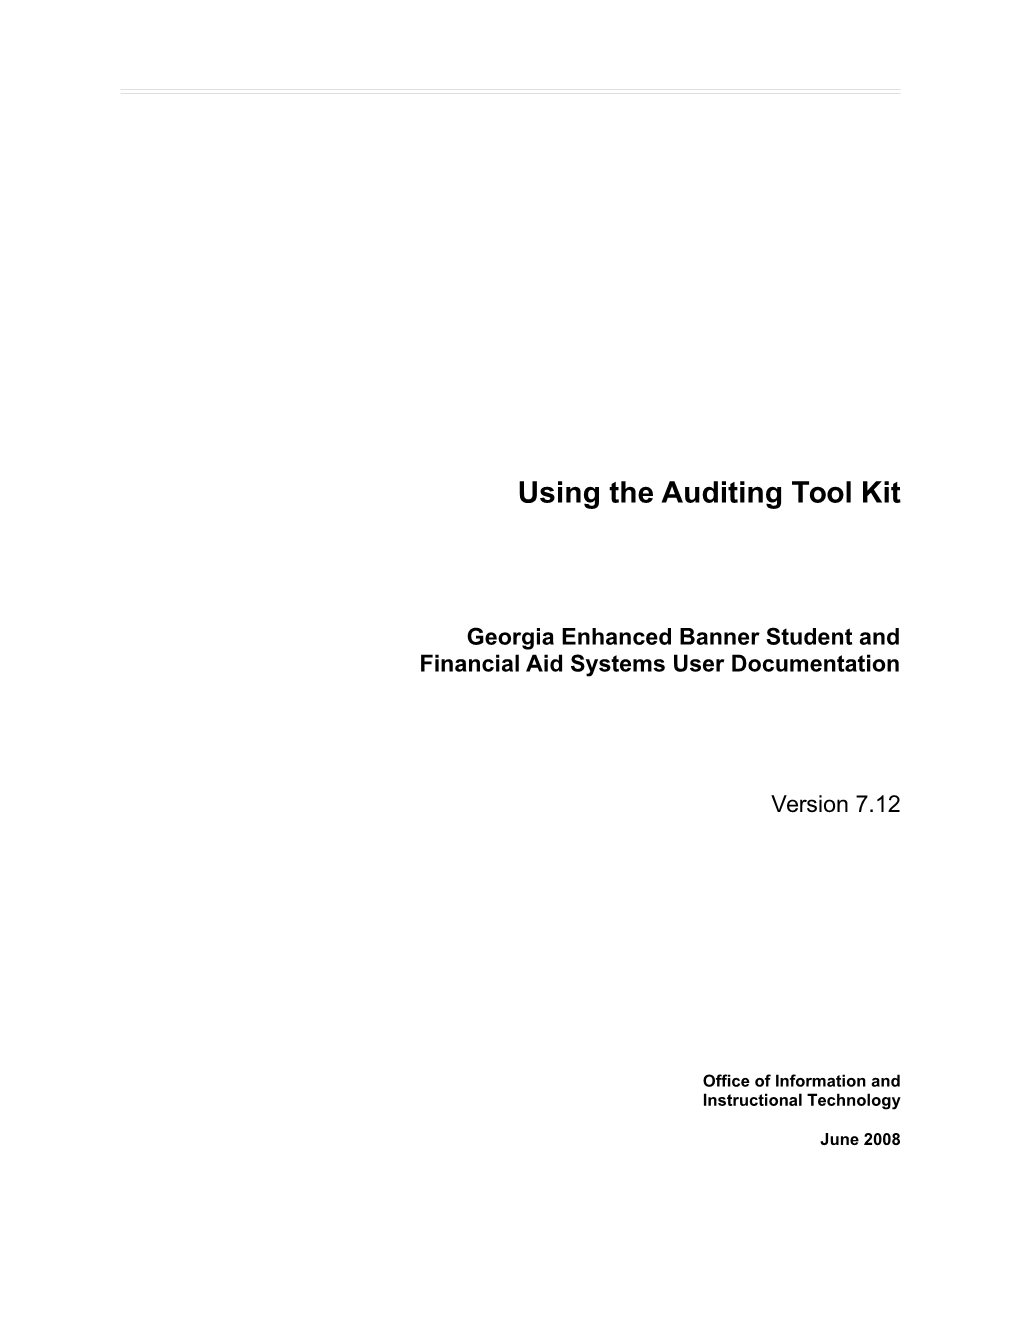 Auditing Tool Kit, Gamods 7.0